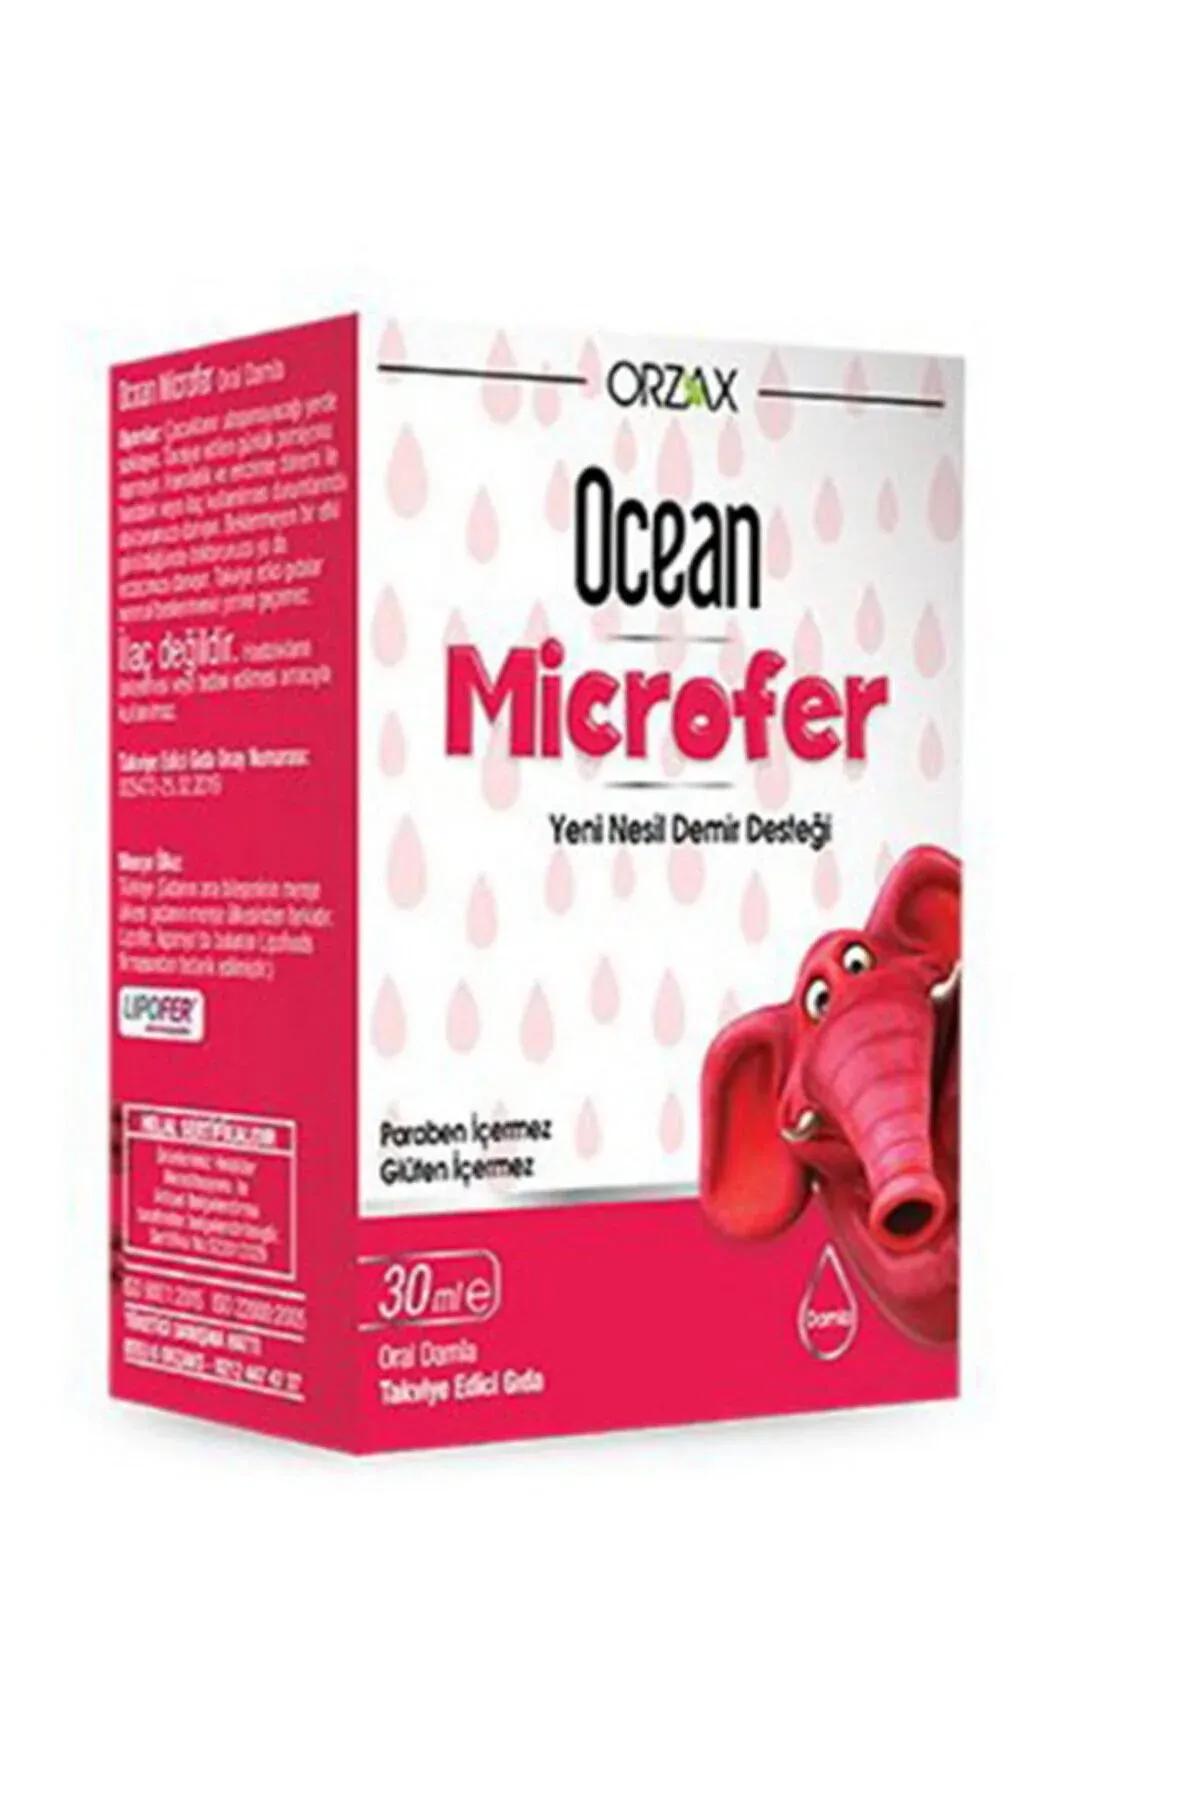 Ocean Microfer Damla İnceleme